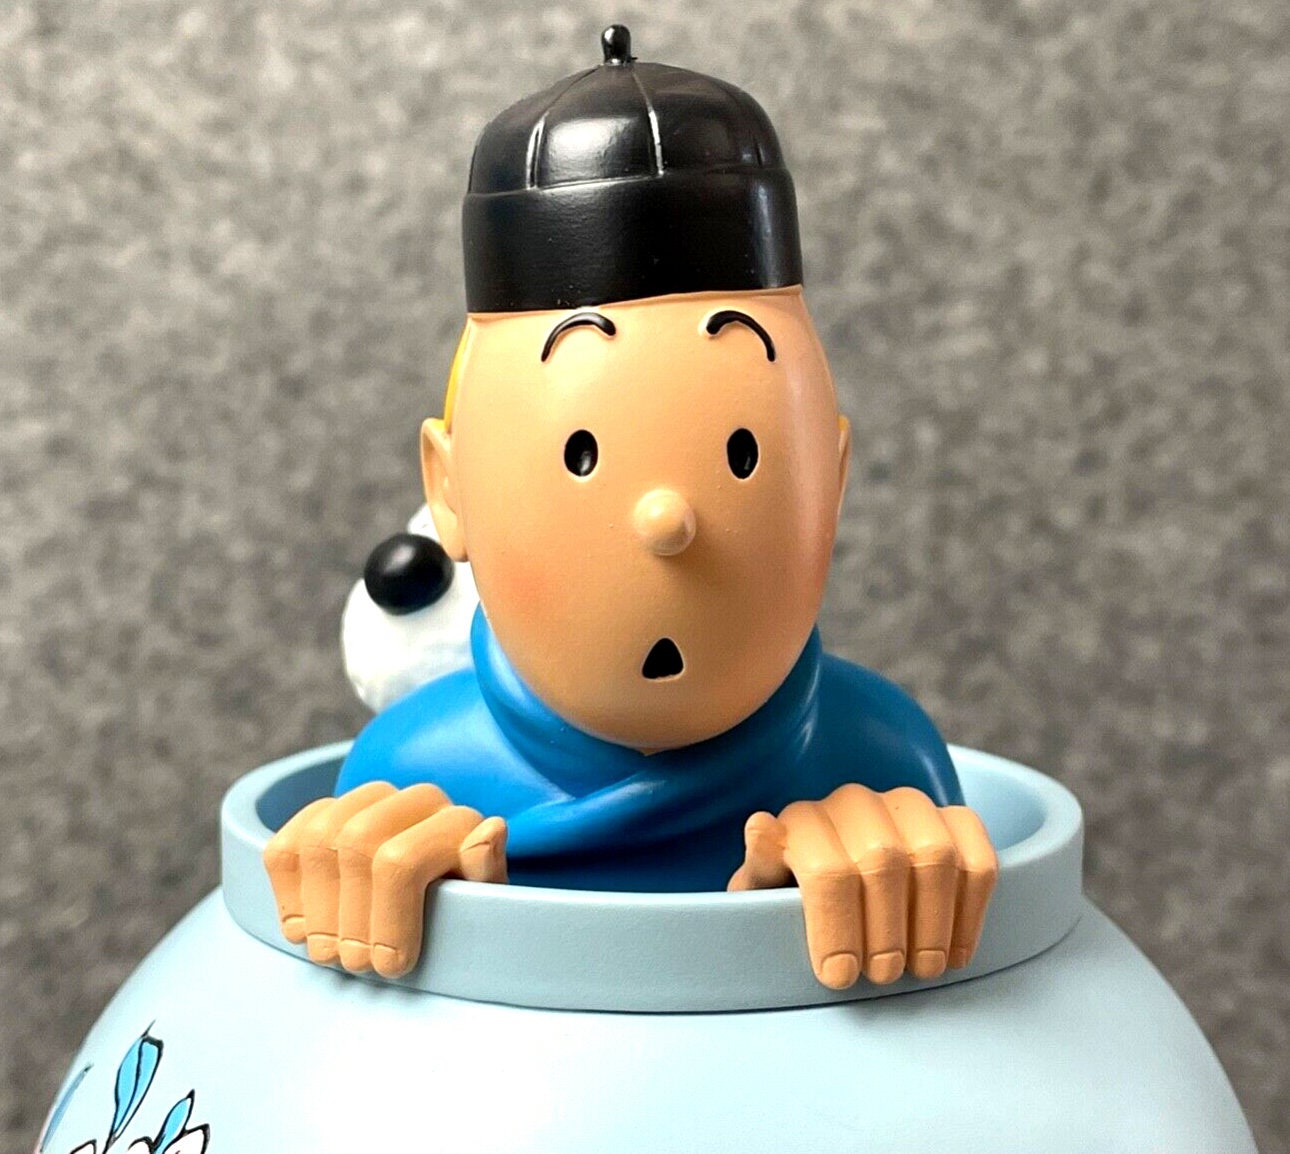 Des figurines Tintin et une maquette de La Licorne aux enchères à Nancy